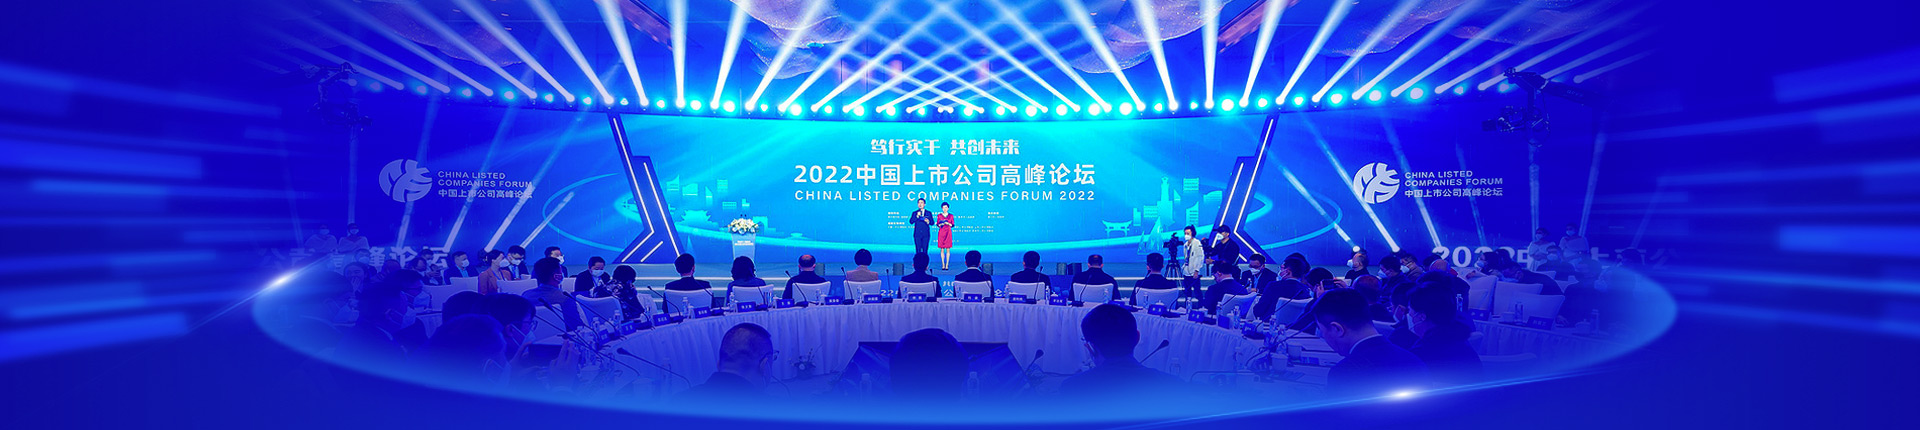 2022中国上市公司高峰论坛举行